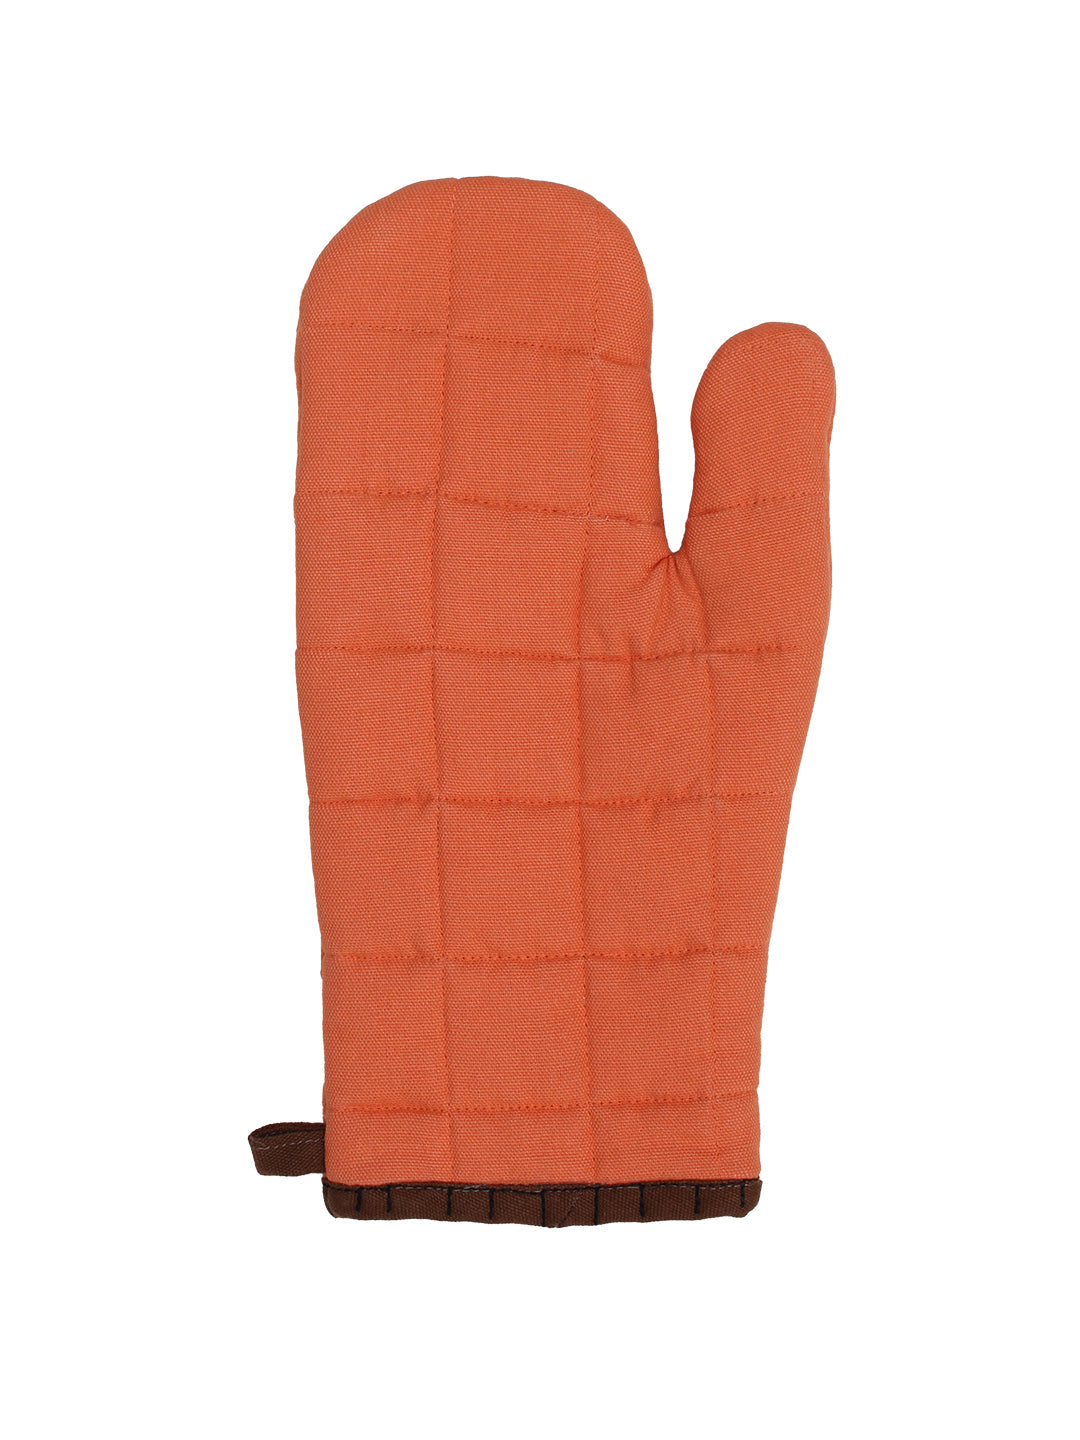 Easy Bake Gloves (Orange)